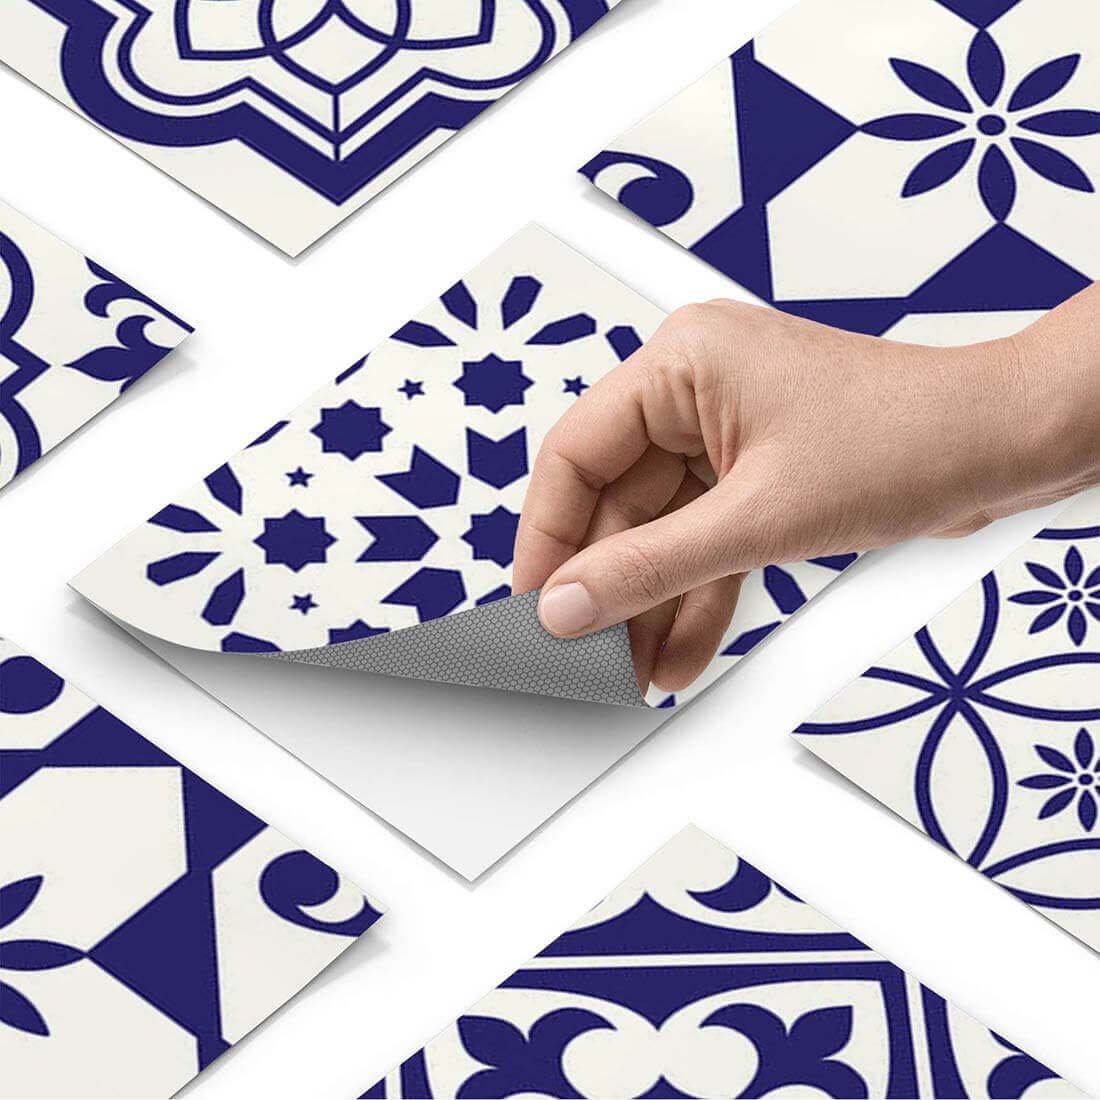 Klebefliesen rechteckig Azulejo Love - Paket - creatisto pds1